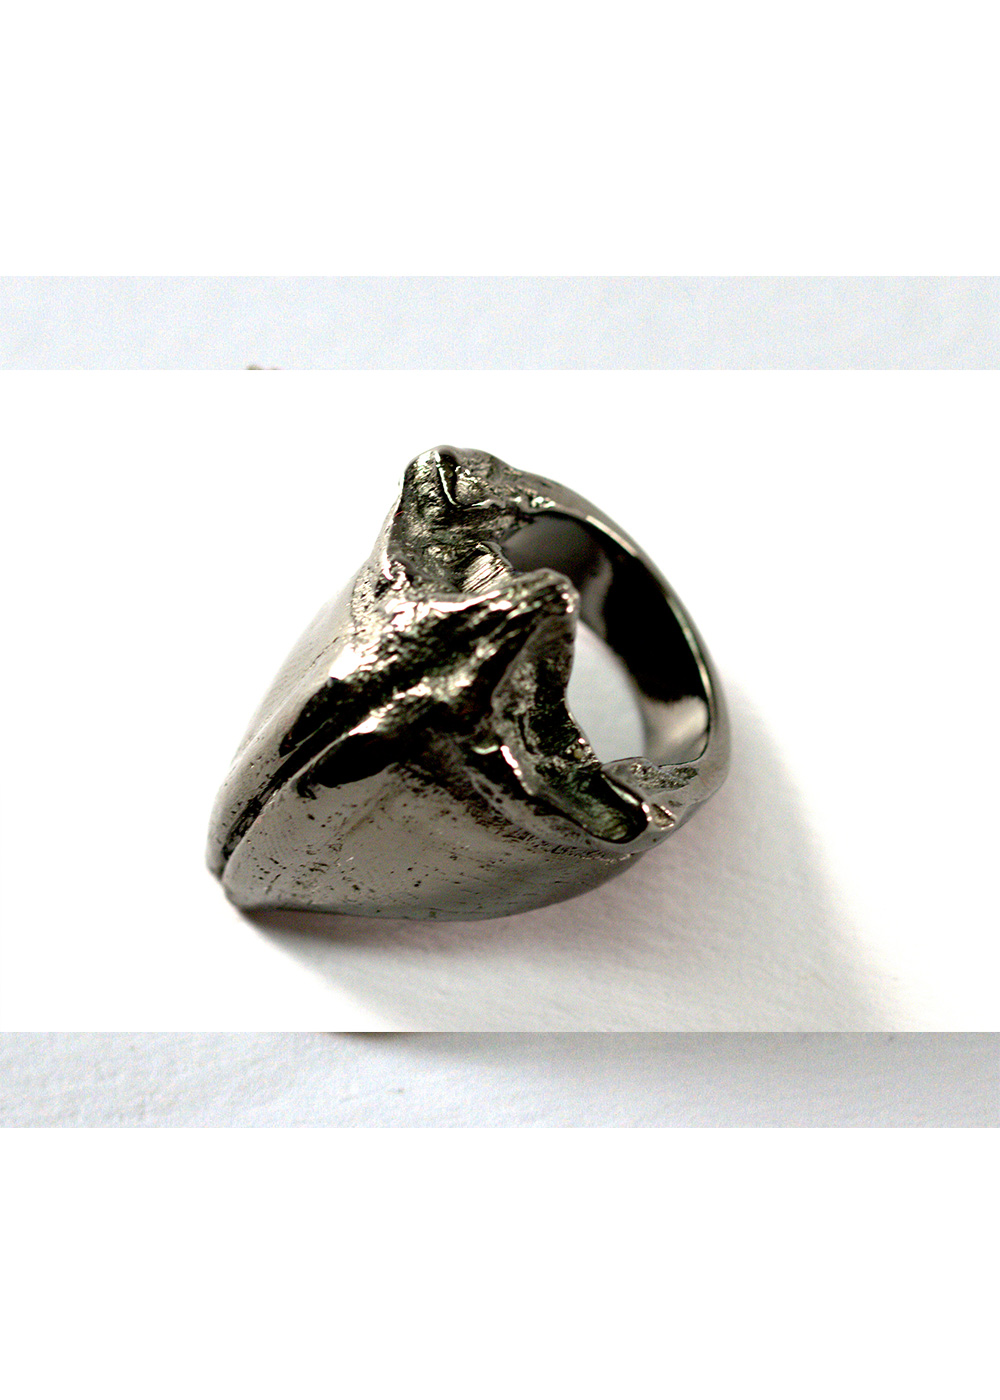 maxilla ring, black rhodanized